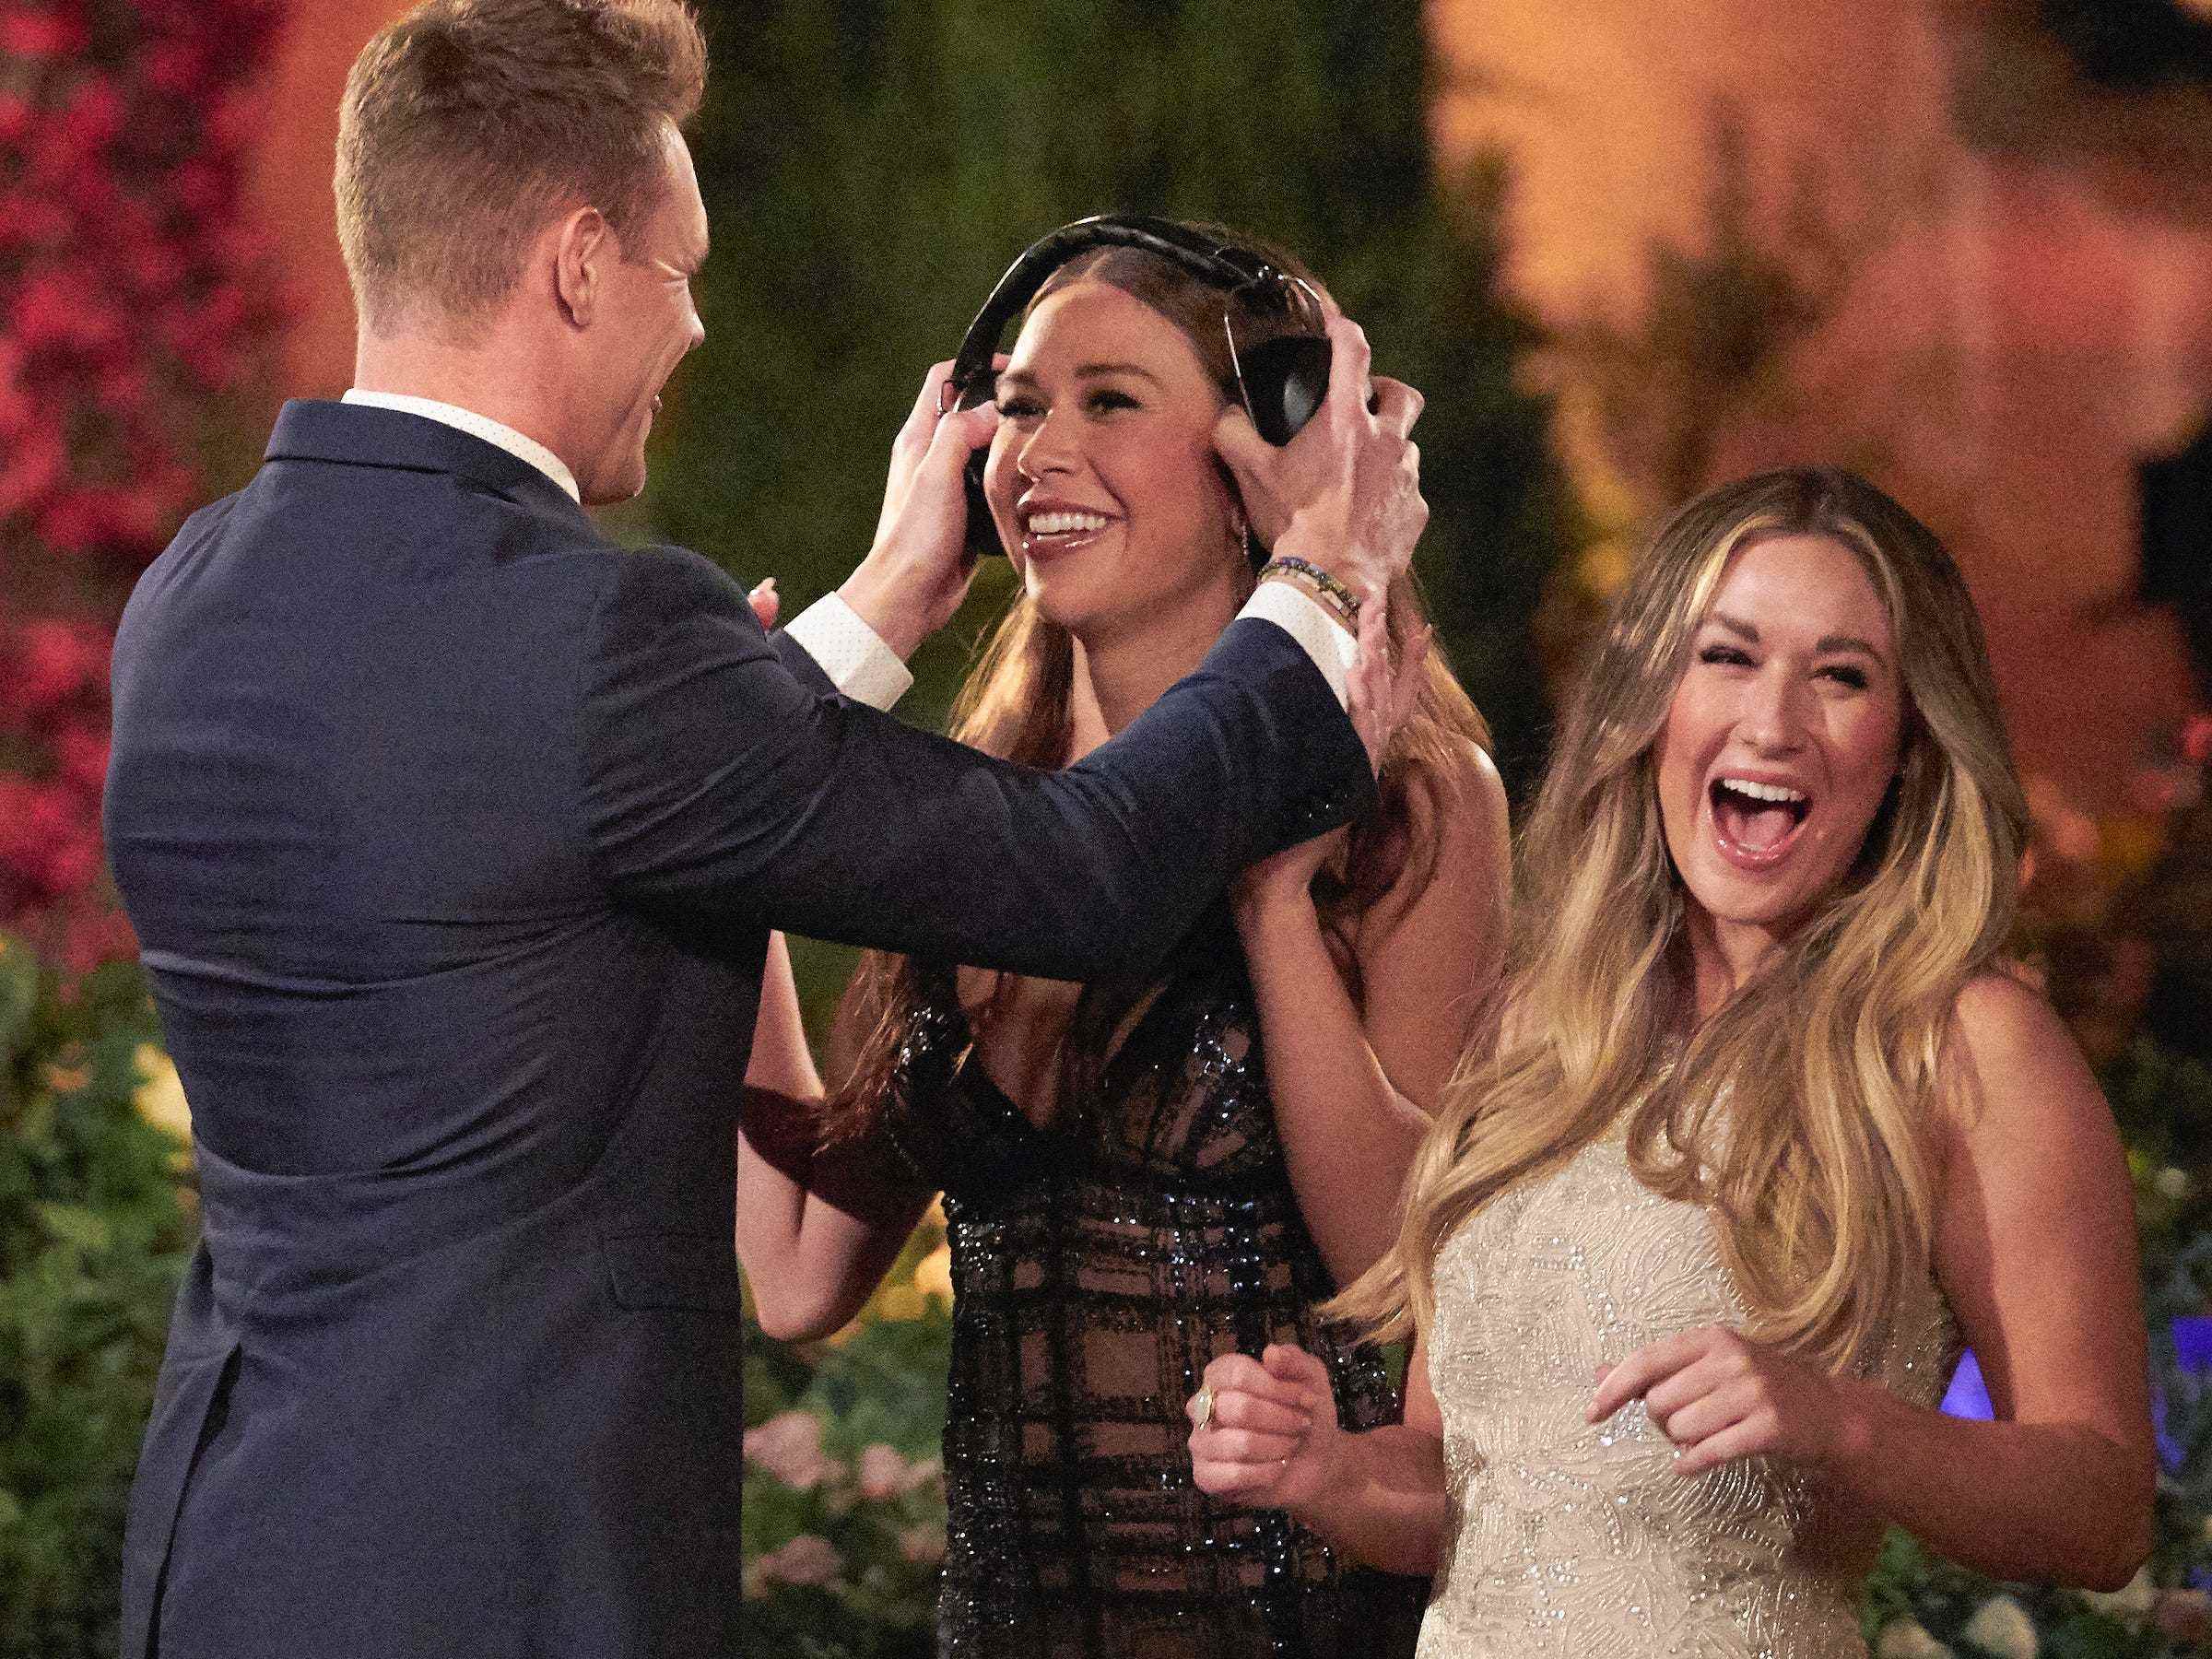 Jordan setzt Gabby Windey ein Paar geräuschunterdrückende Kopfhörer auf, während eine lächelnde Rachel Recchia in diesem Standbild von der Premiere der 19. Staffel von „The Bachelorette“ zuschaut.